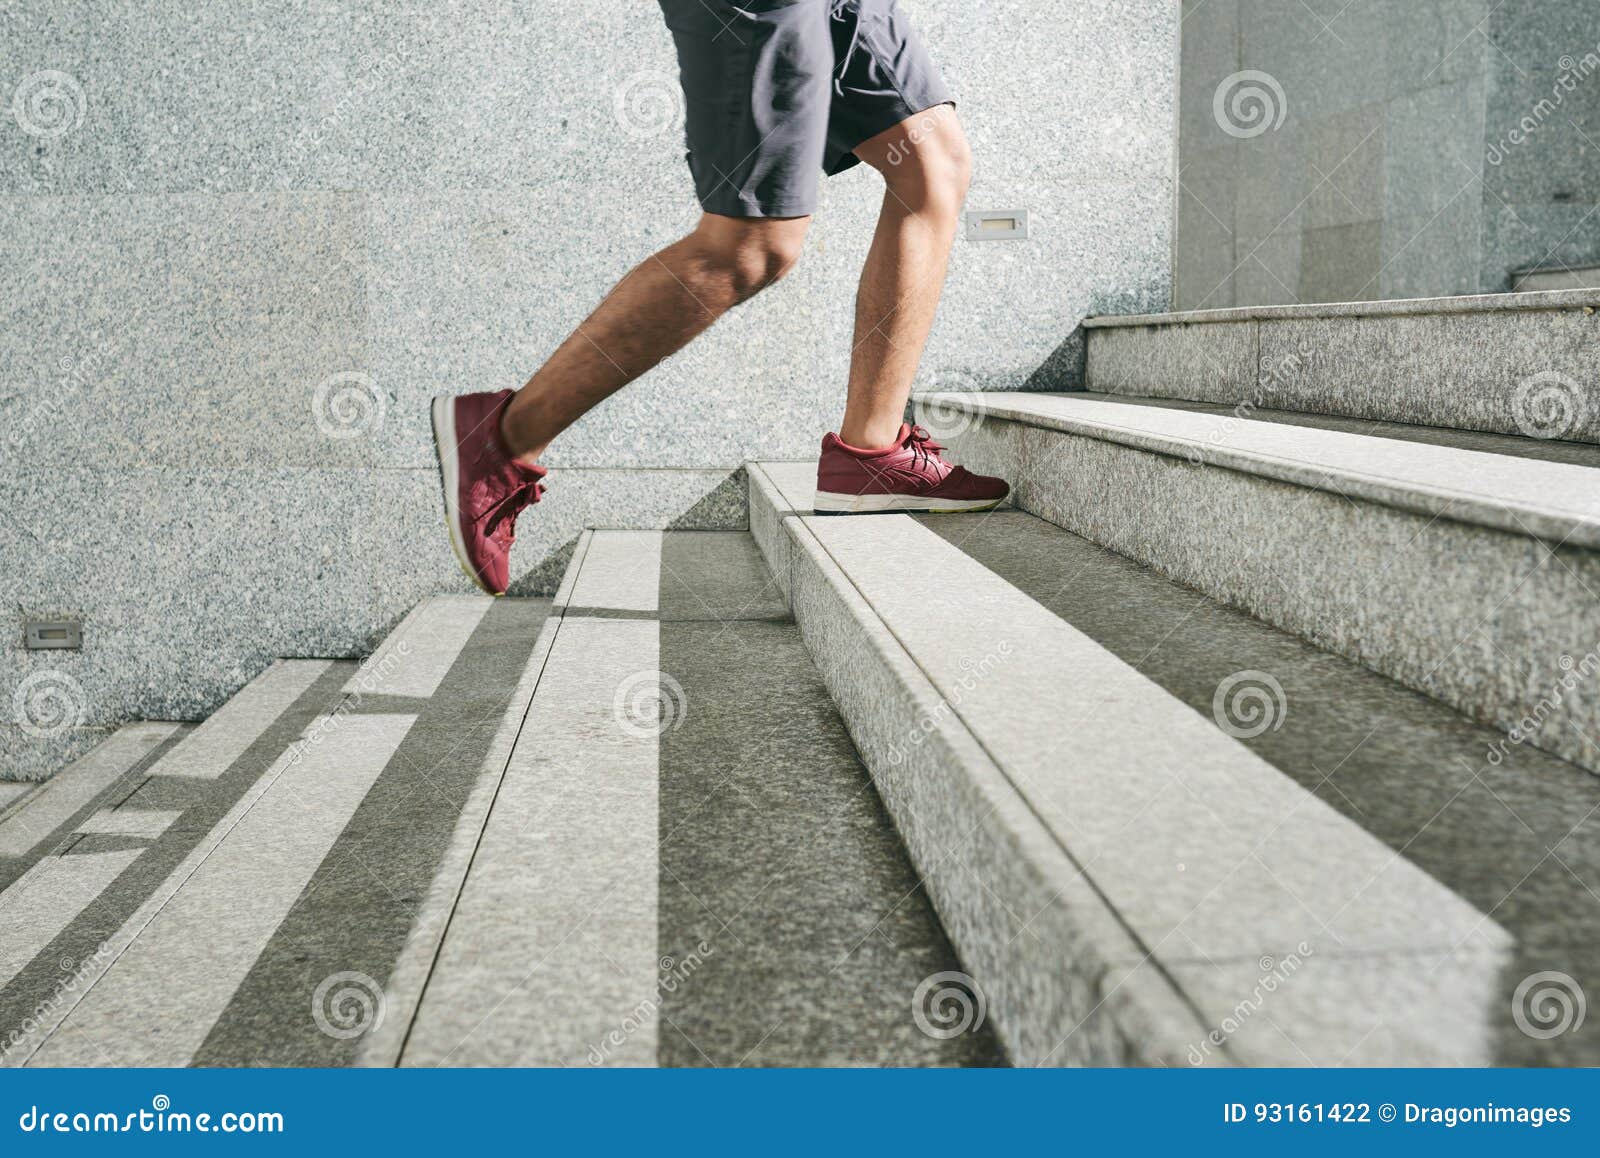 Полный шагать. Ступенька для ног. Ноги идут по ступенькам. Человек на ступеньках. Нога человека на лестнице.